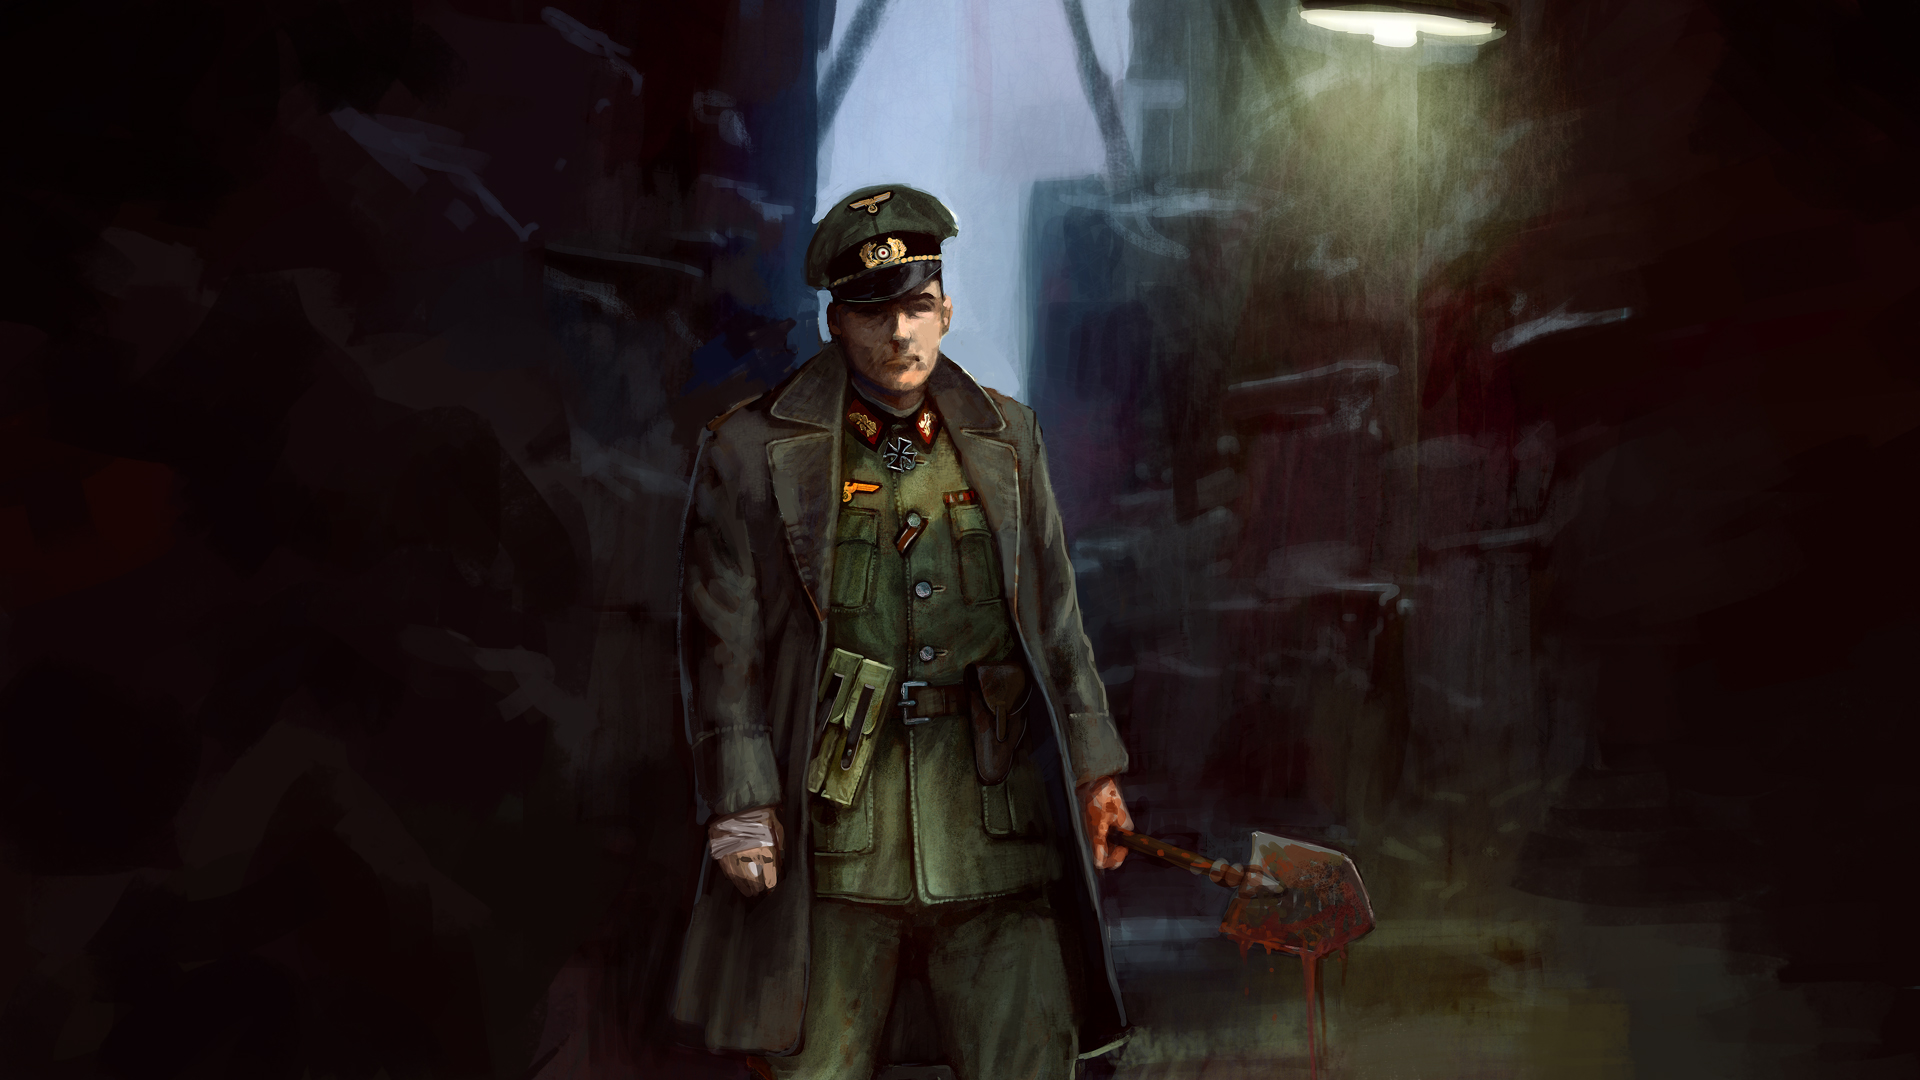 sniper-elite-nazi-zombie-army-2-herman-wolff-steam-trading-cards-wiki-fandom-powered-by-wikia